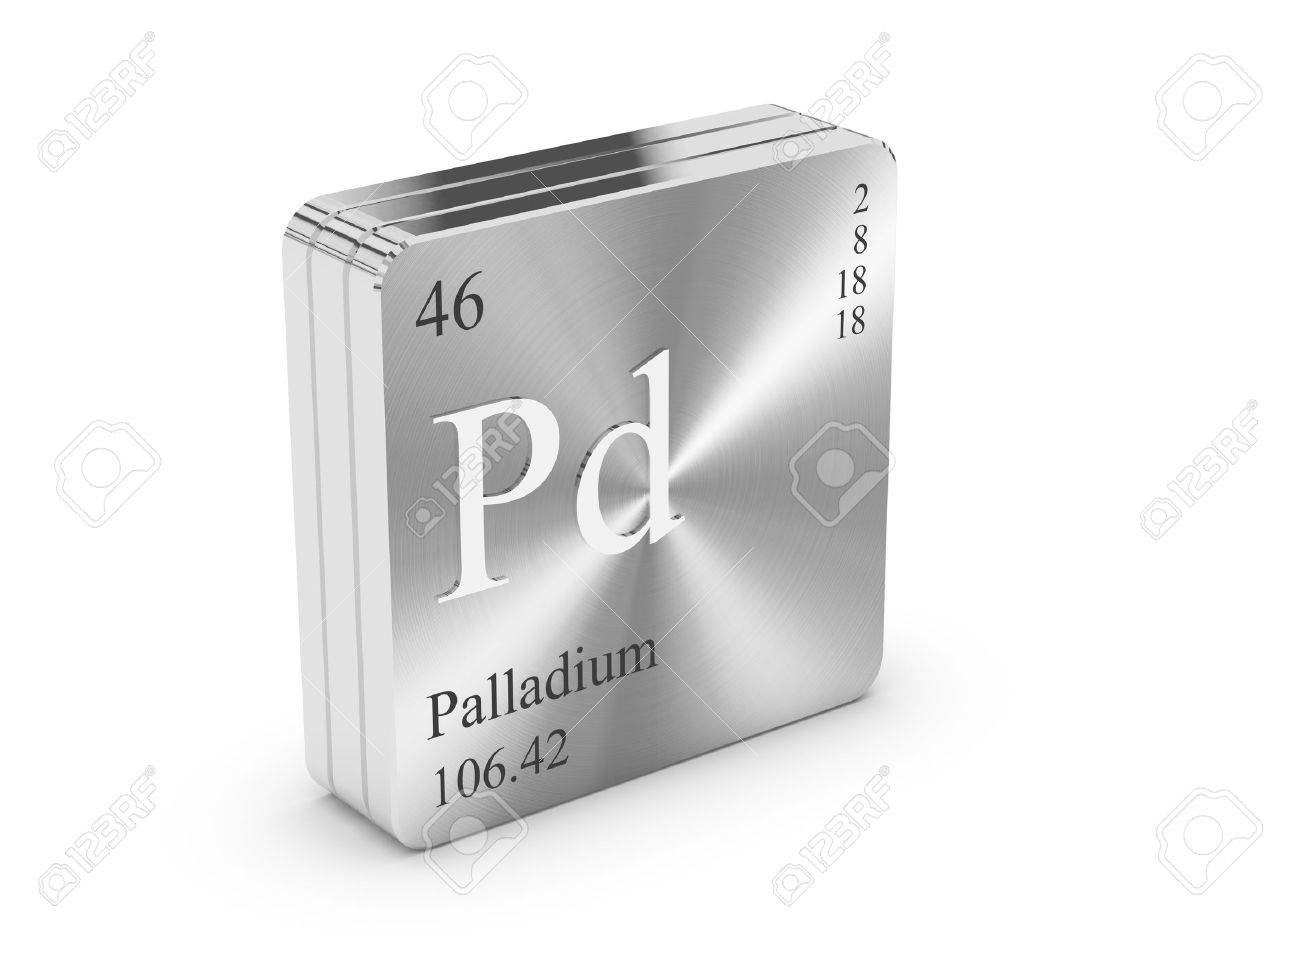 Paladium 999,5% - weight account